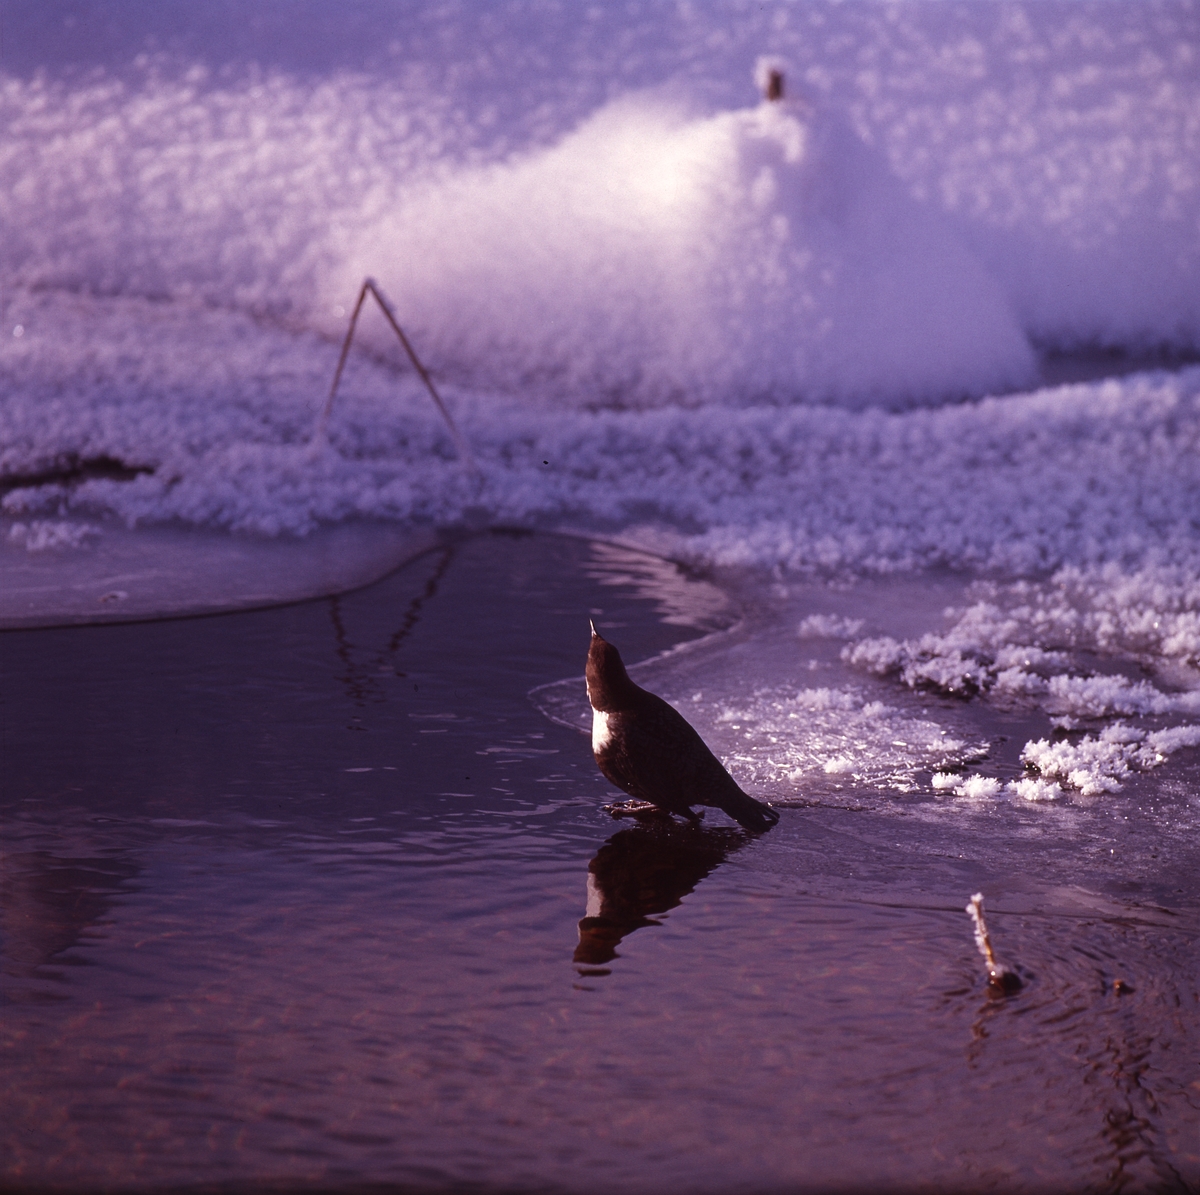 Strömstare på tunn is i vattenbrynet. I bakgrunden syns snöklädd mark.